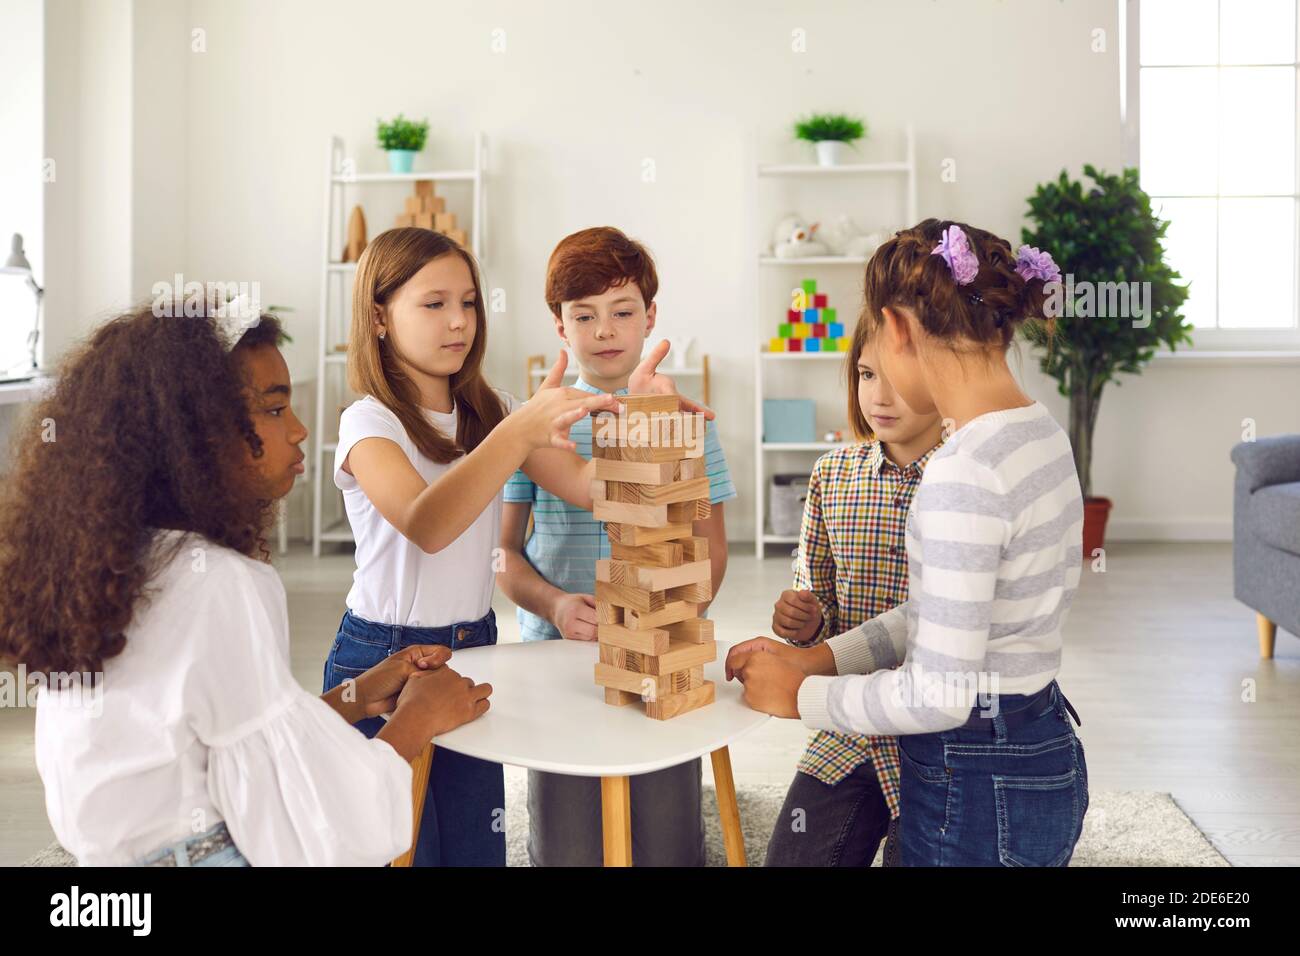 Los niños de raza mixta amigos jugando construir pirámide de detalles de madera juntos Foto de stock